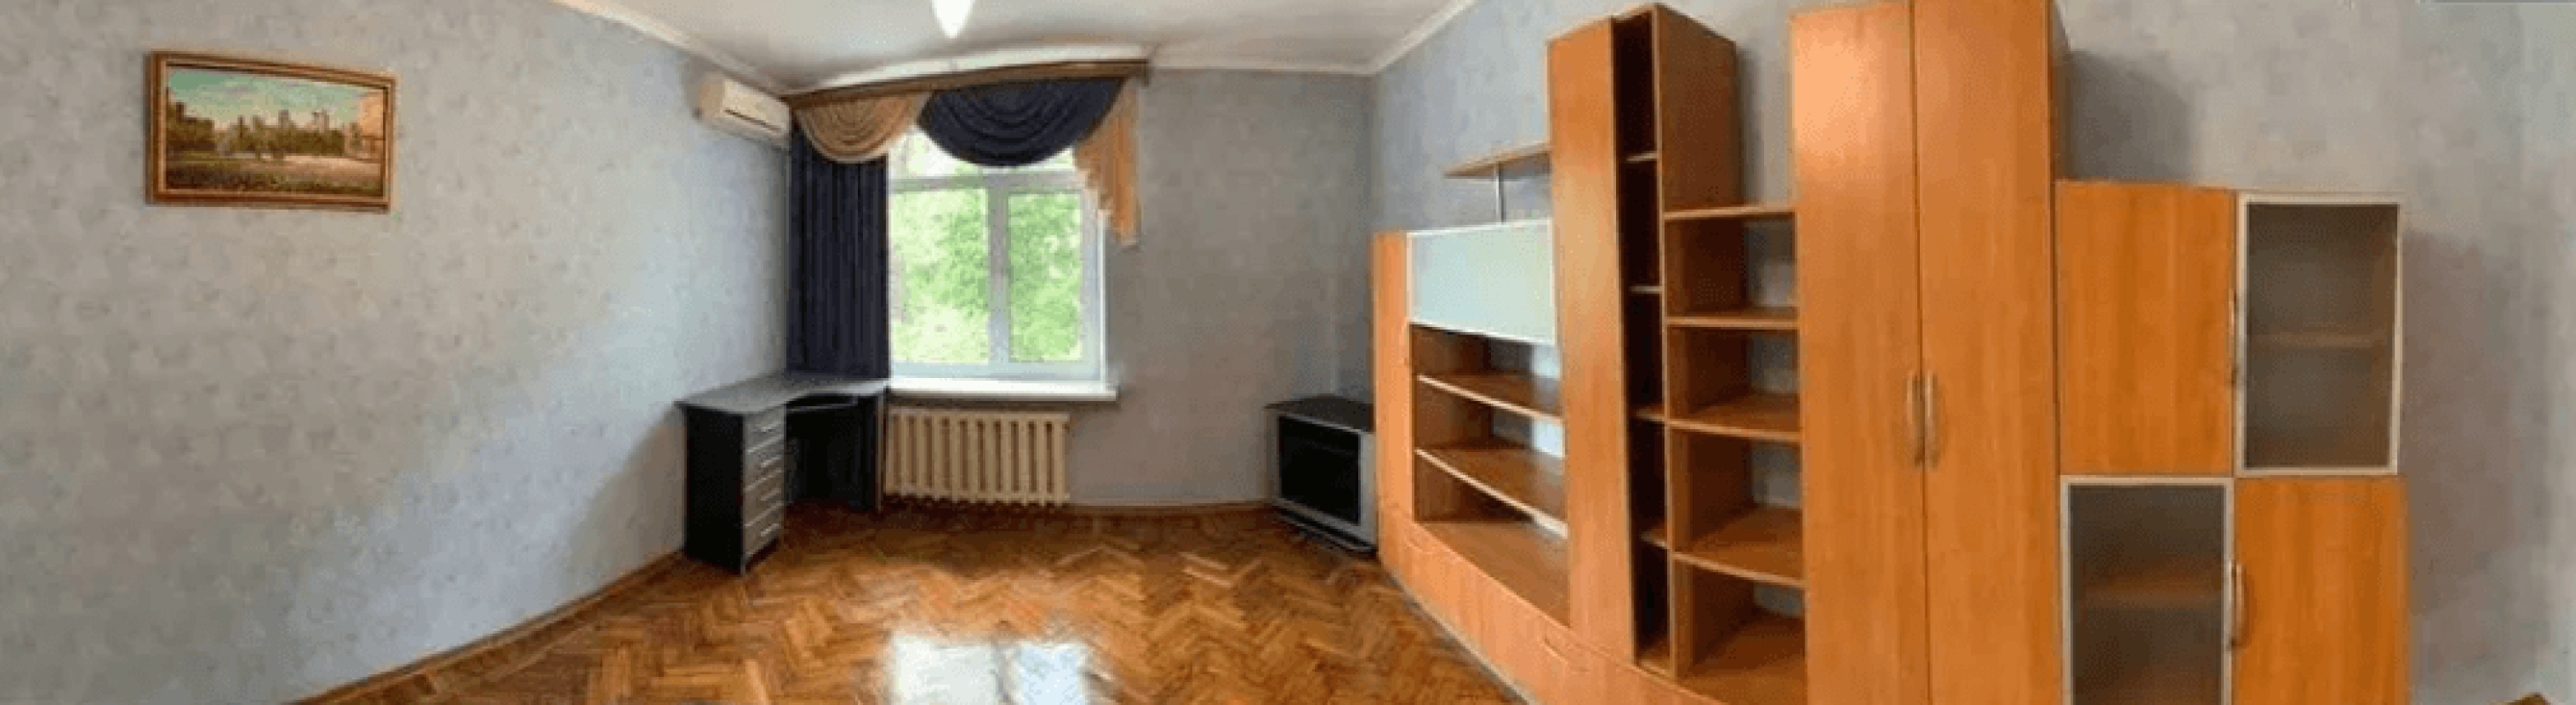 Довгострокова оренда 2 кімнатної квартири Григорівське шосе (Комсомольське шосе)